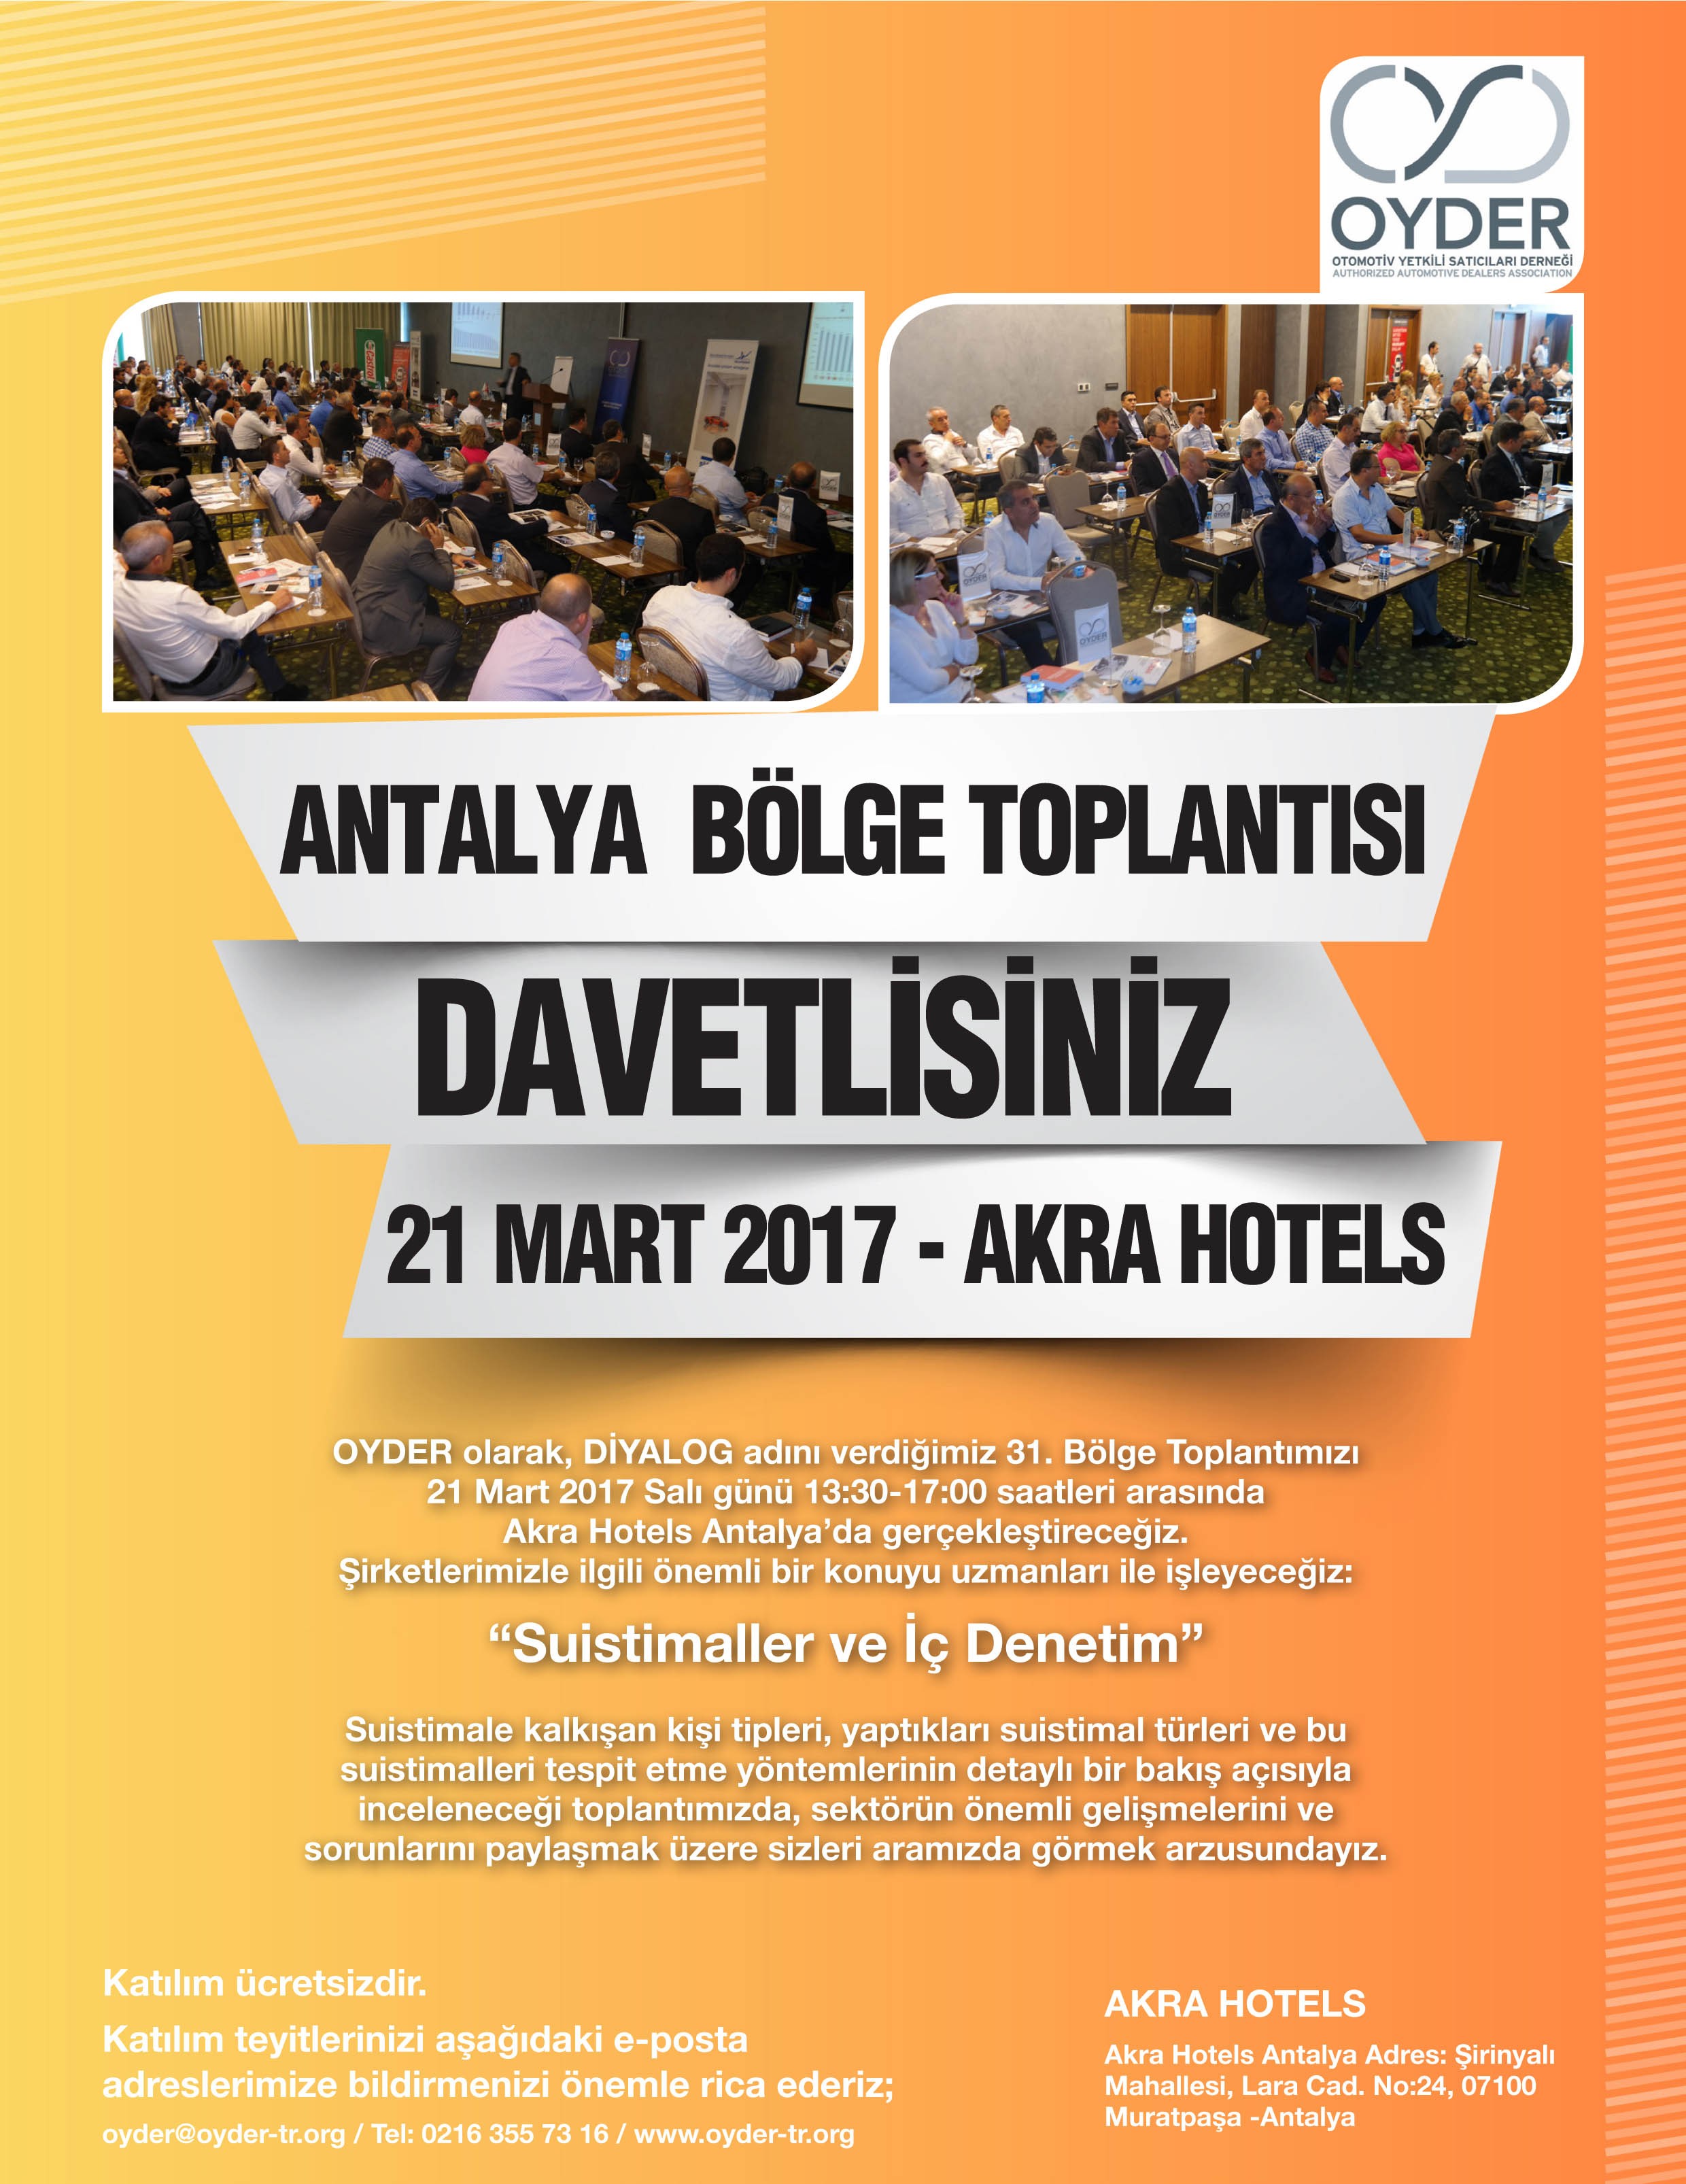 Oyder 31. Bölge Diyalog Toplantısı Antalya’da Gerçekleştirildi.